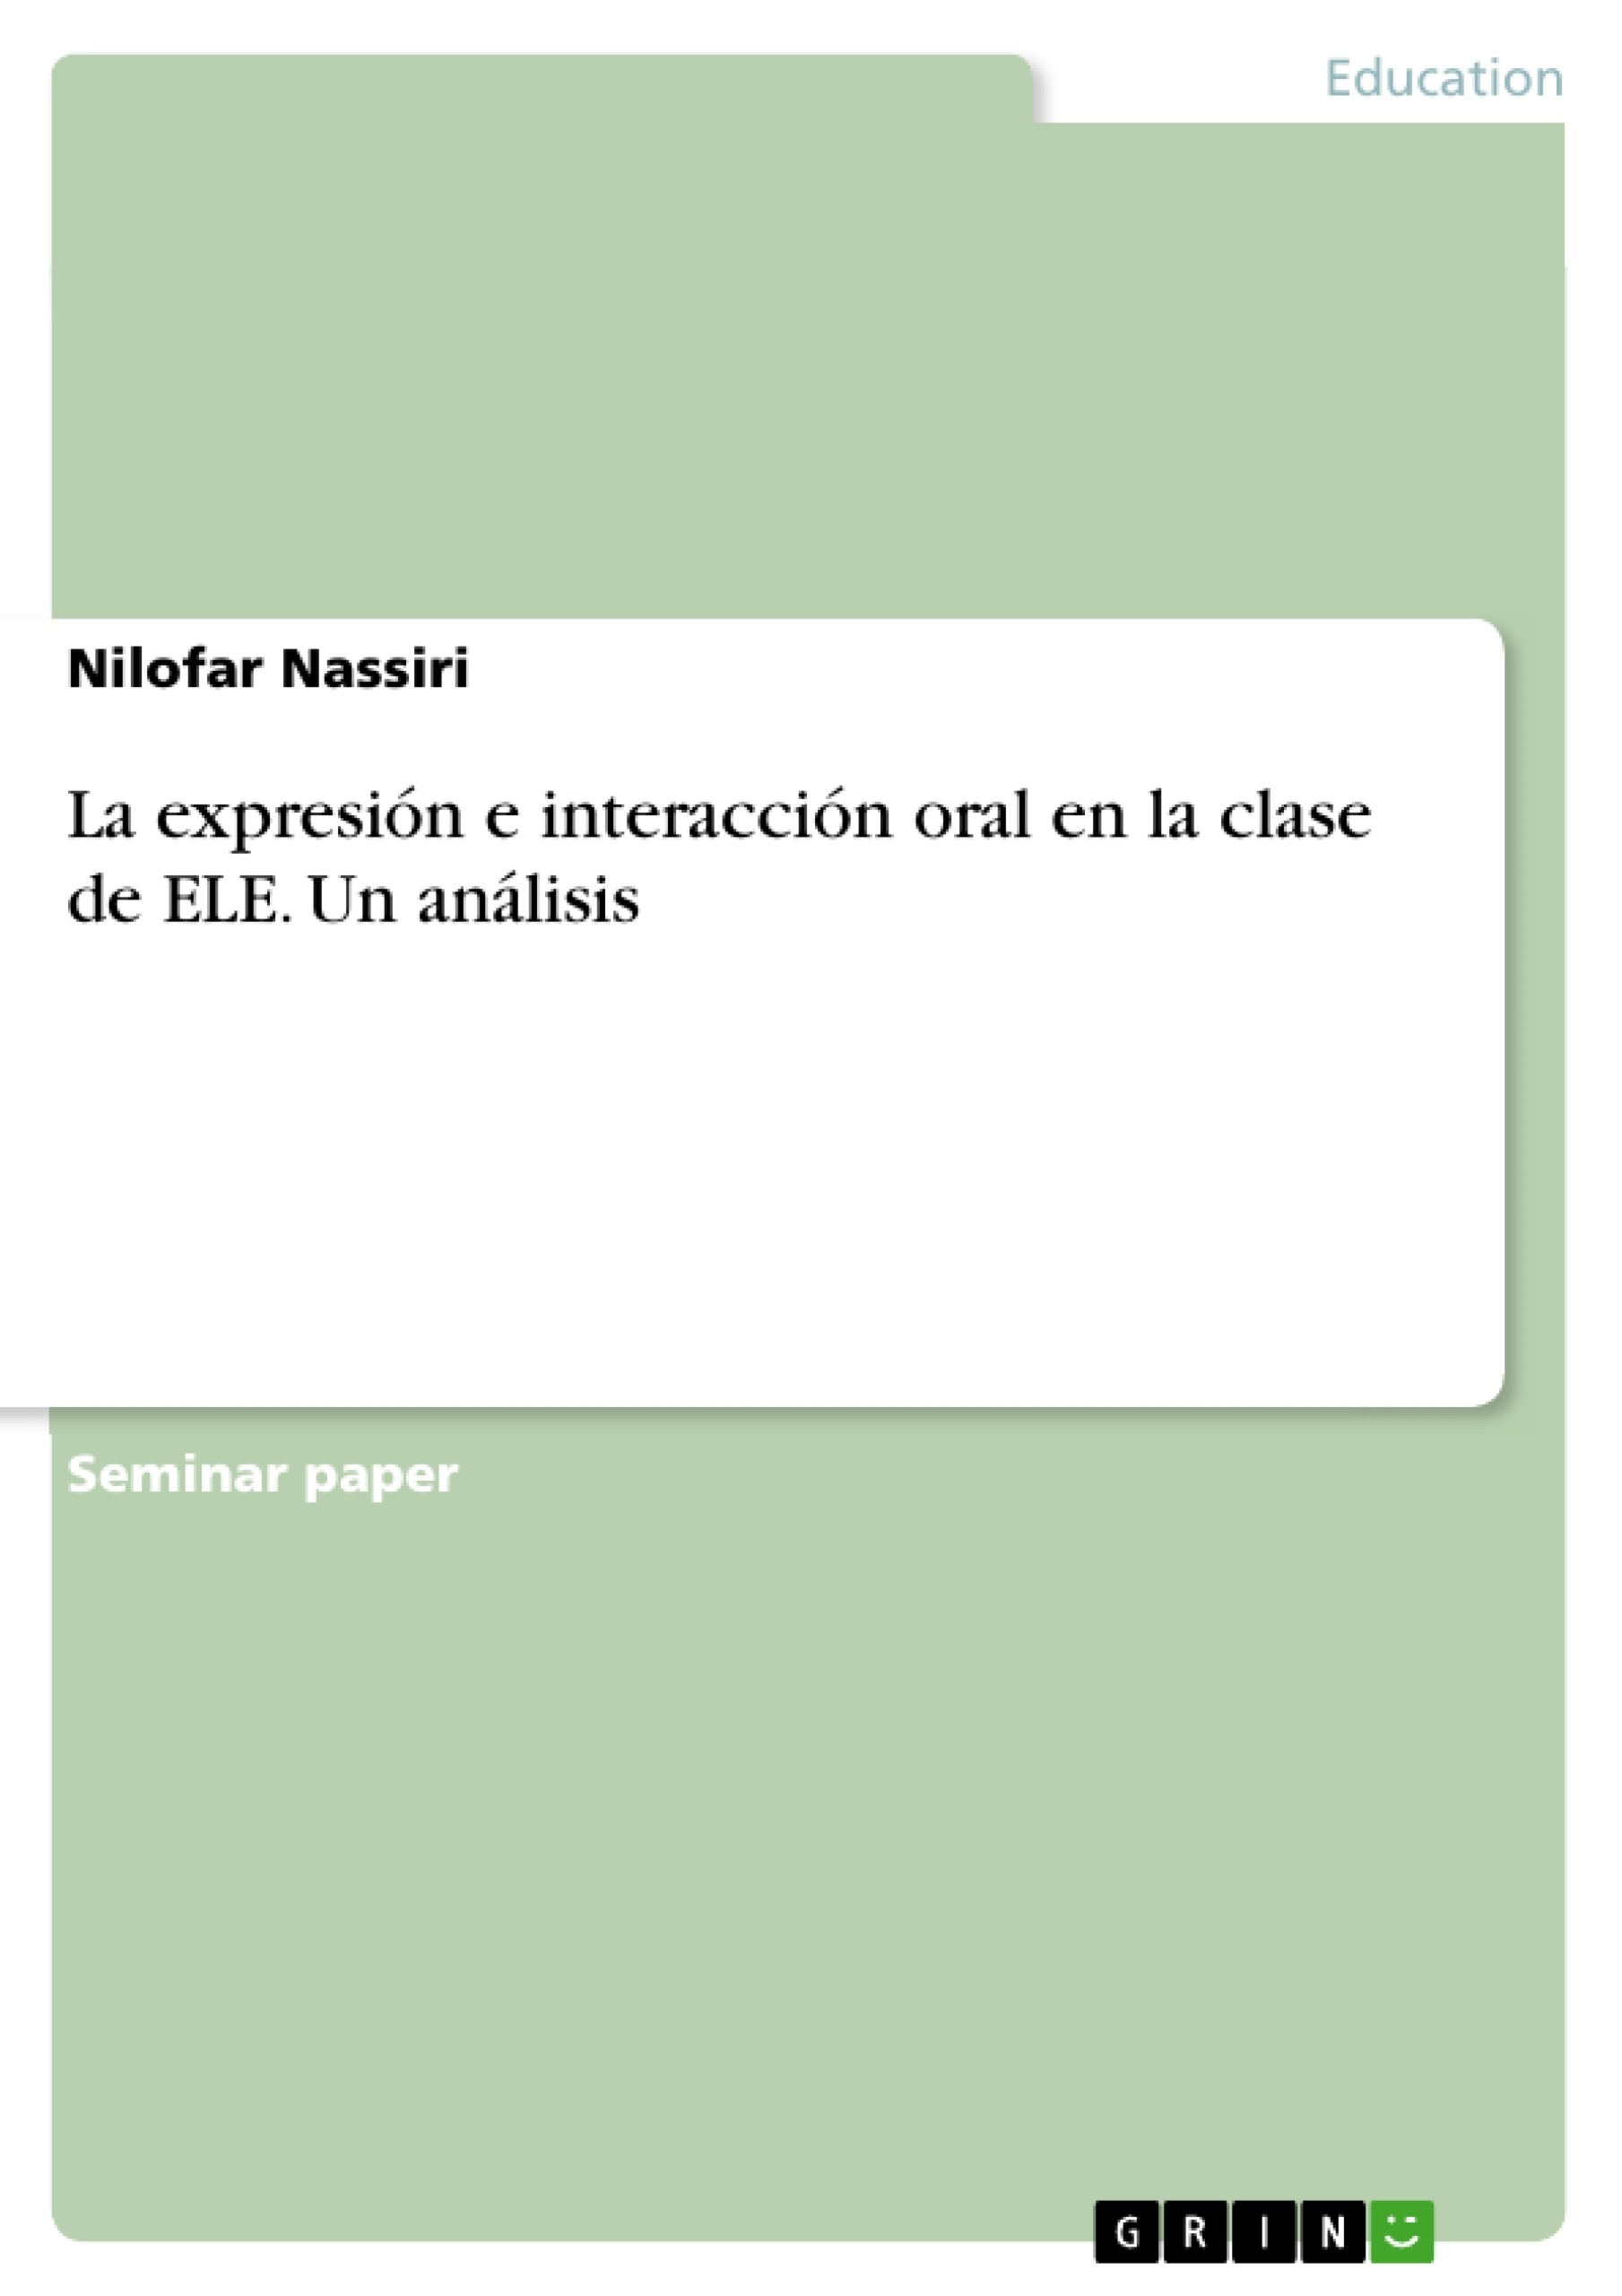 Título: La expresión e interacción oral en la clase de ELE. Un análisis